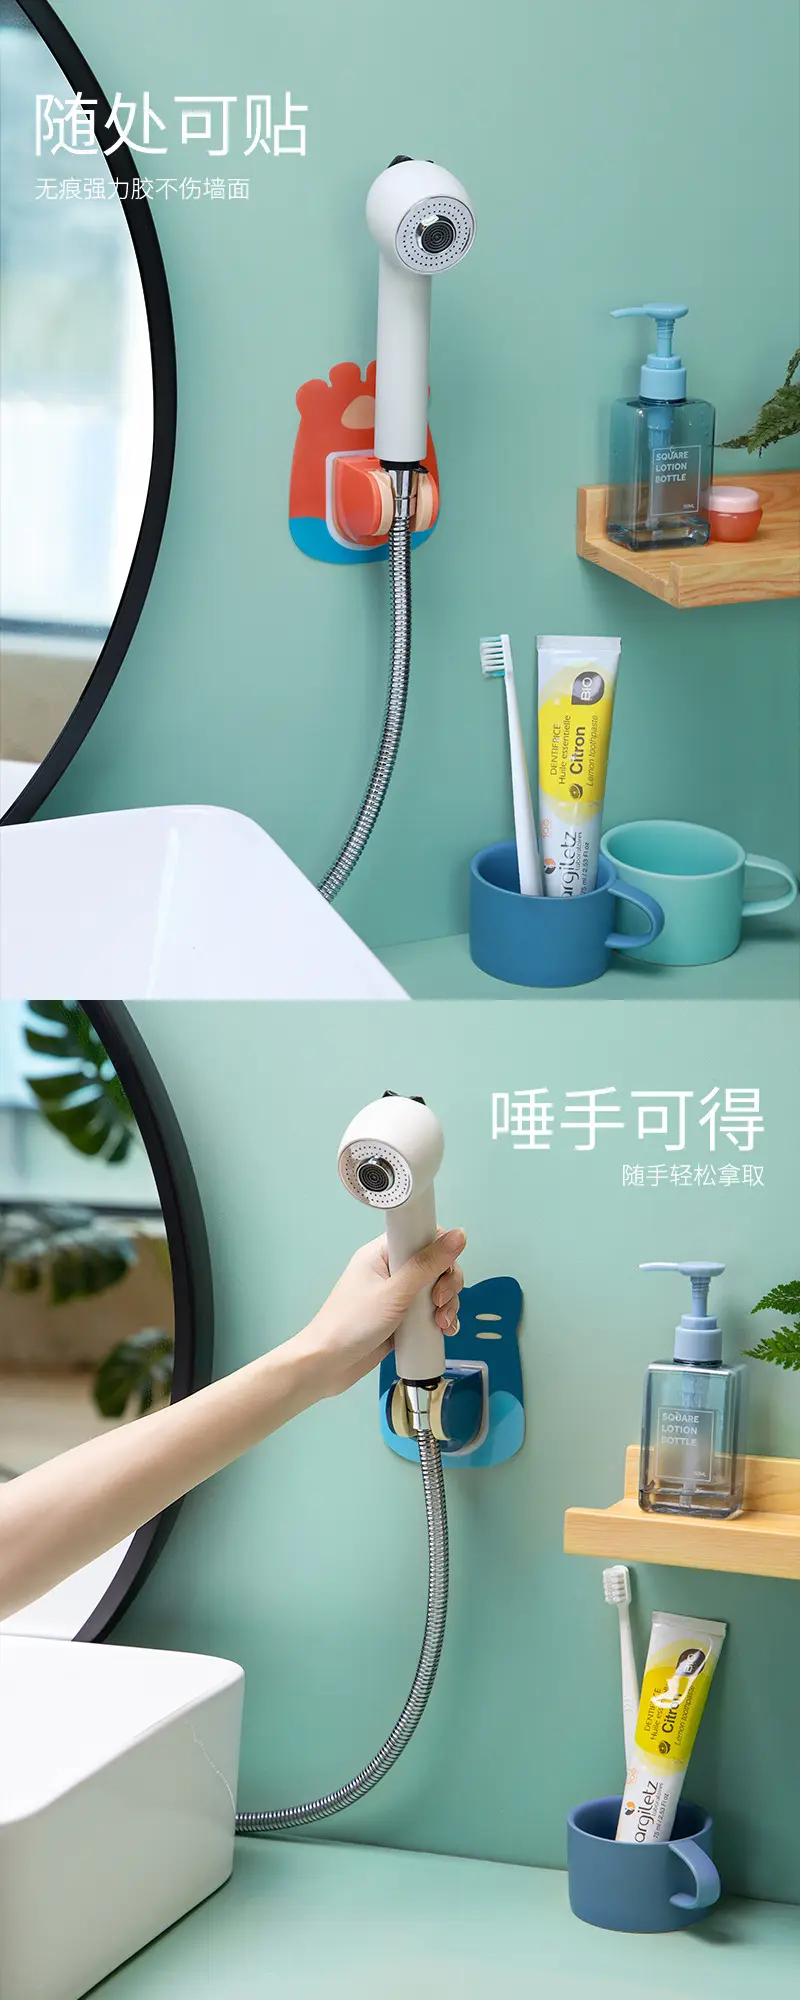 Hot selling wall rack bathroom creative cartoon bathroom adjustable water proofing durable wall mounted hand shower holder